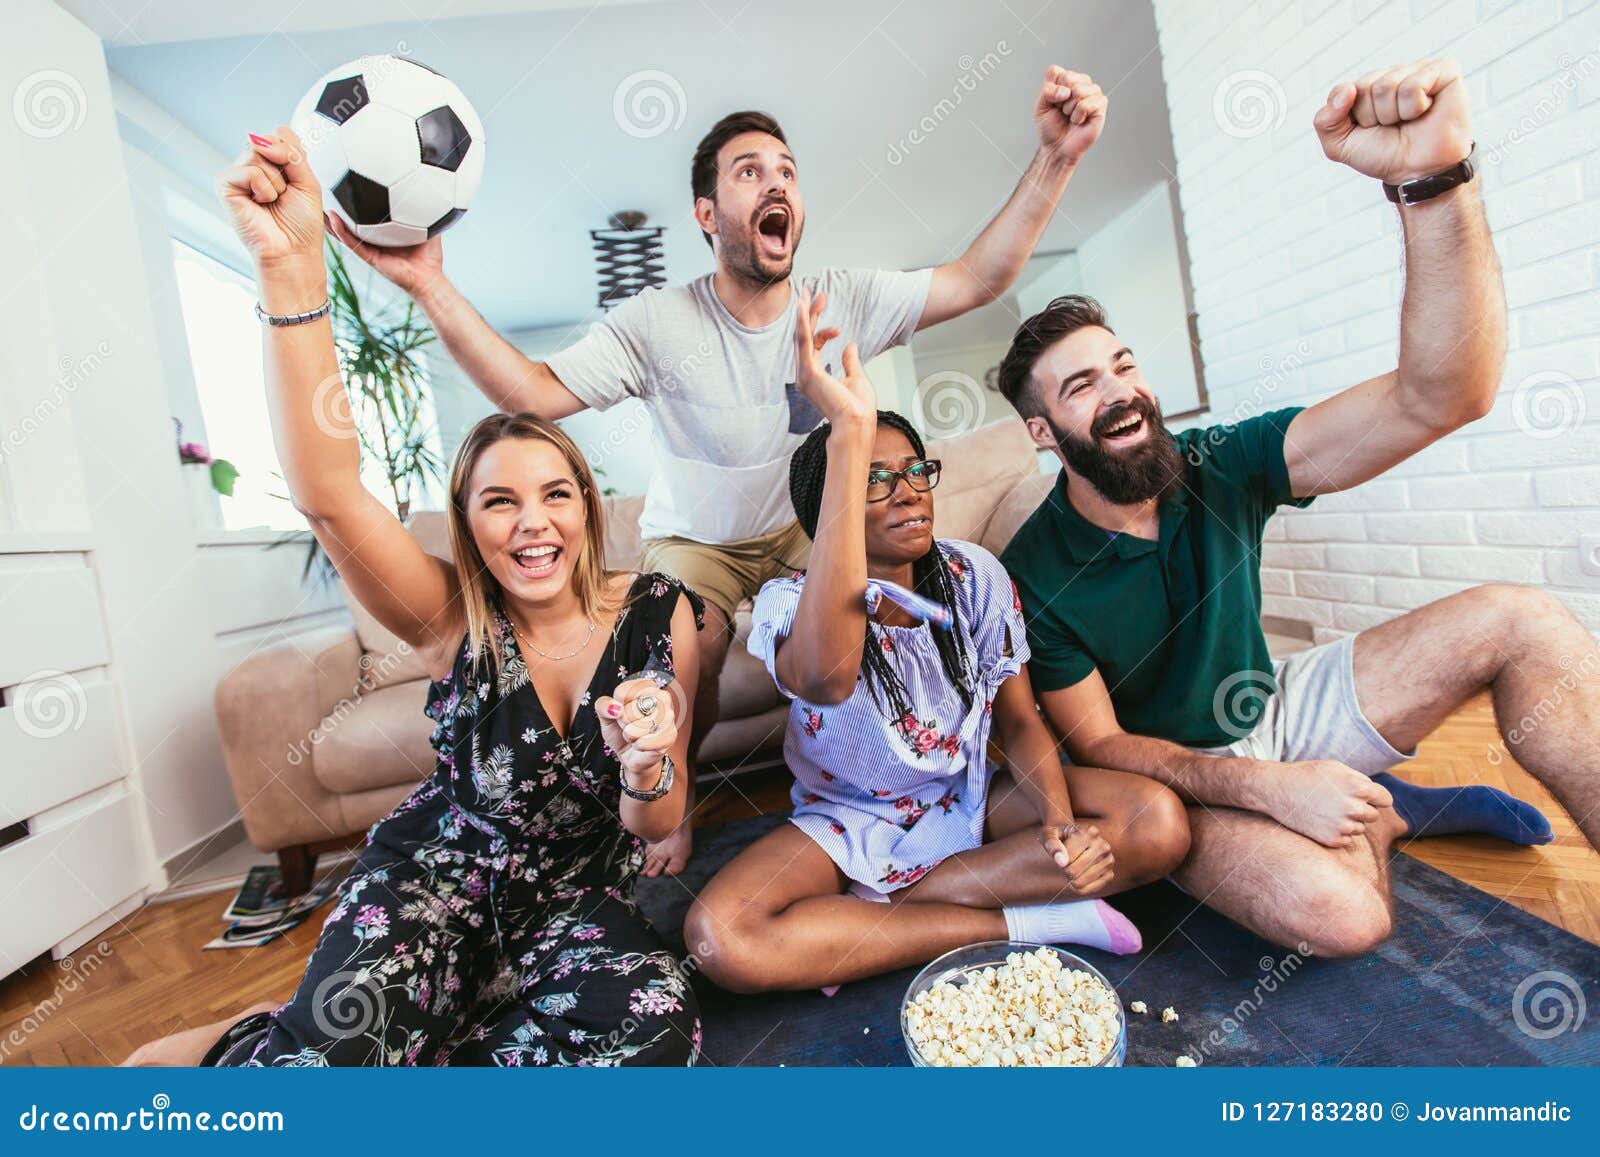 Звезды смотрят футбол. Друзья смотрят футбол. Футбольные болельщики перед телевизором. Фанаты смотрят футбол по телевизору. Два друга смотрят футбол.